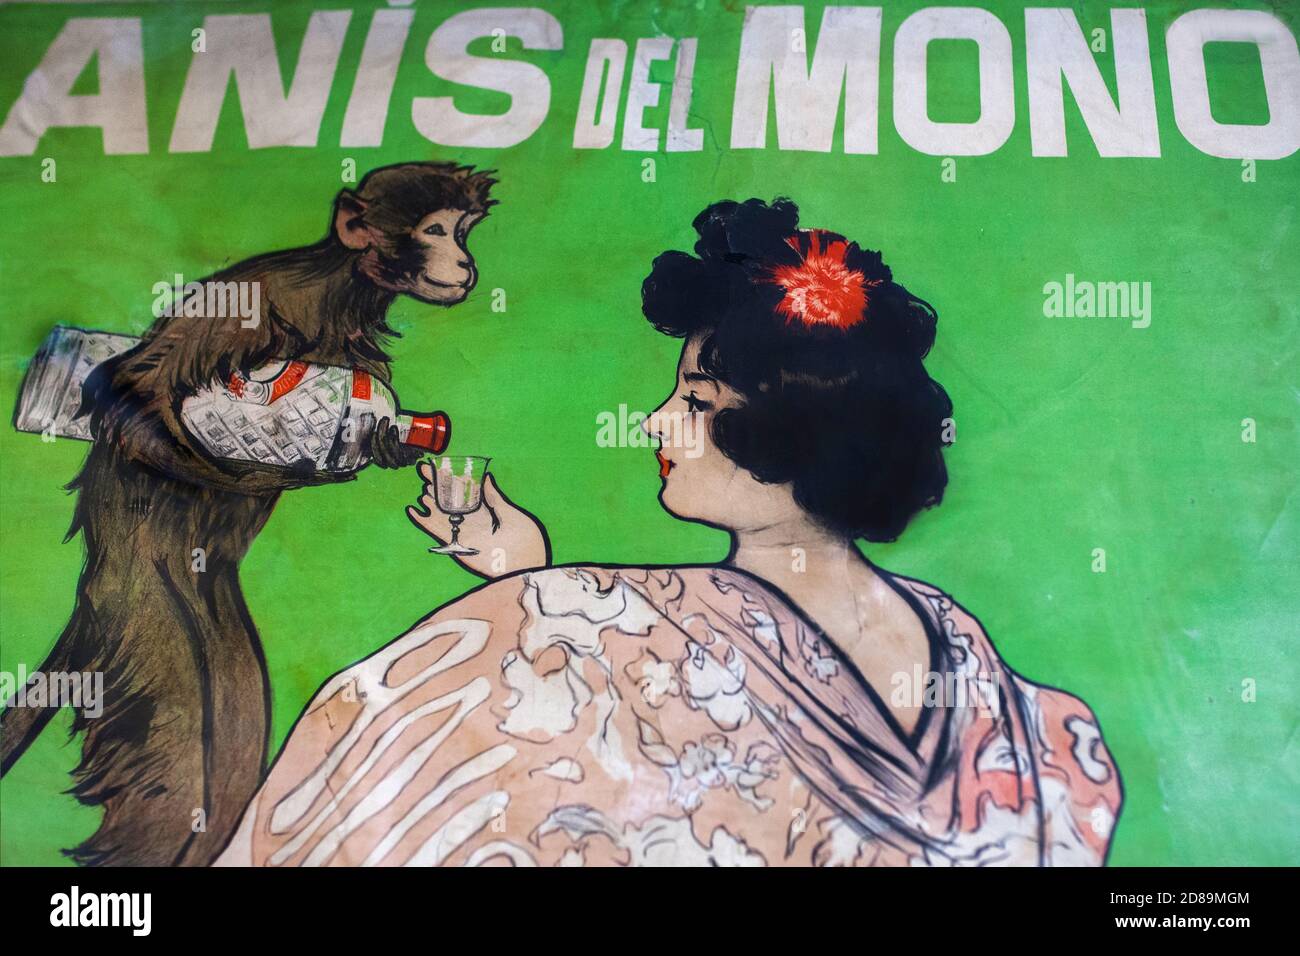 Barcellona, Spagna - 26 dicembre 2019: Manifesto di Anis del Mono, in una gonna di percala pressata. Progettato da Ramon Casas nel 1998. Dettaglio. Museo Nazionale d'Arte di Foto Stock